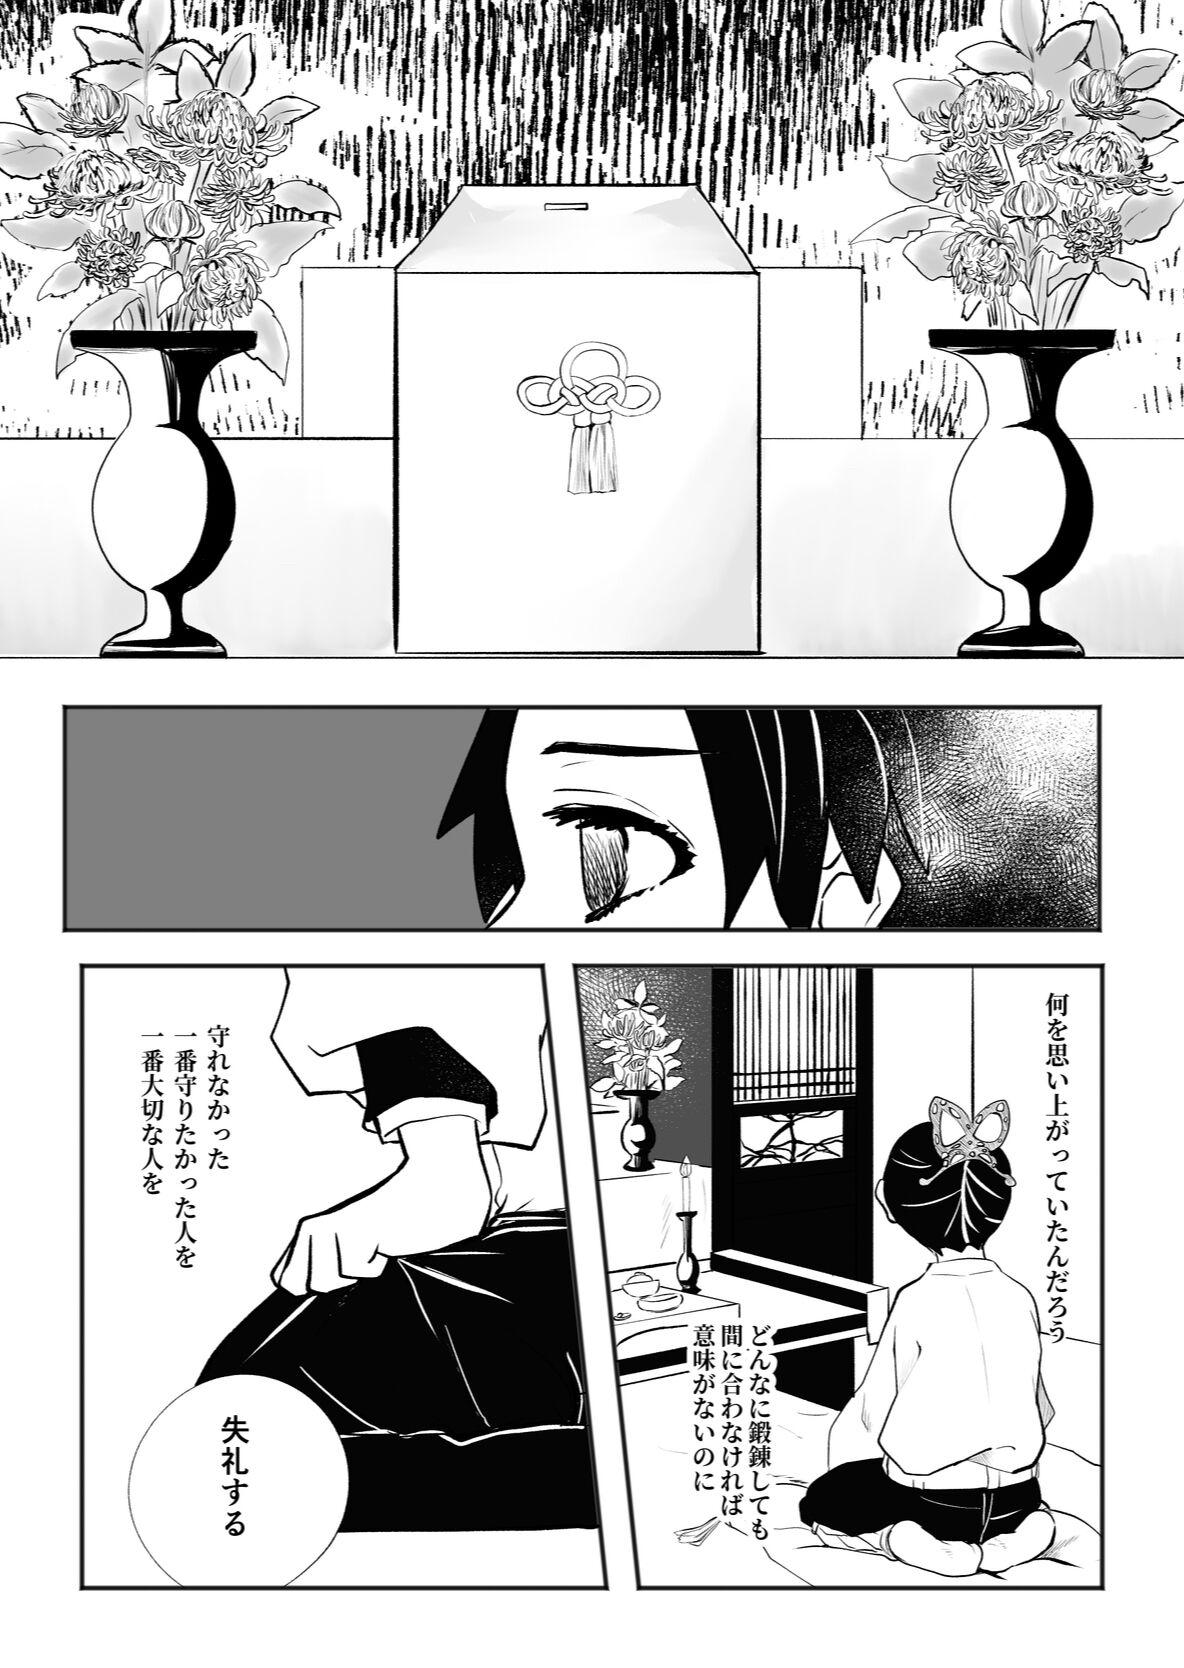 Load Hodokete Tokeru - Kimetsu no yaiba | demon slayer Gostosa - Page 10